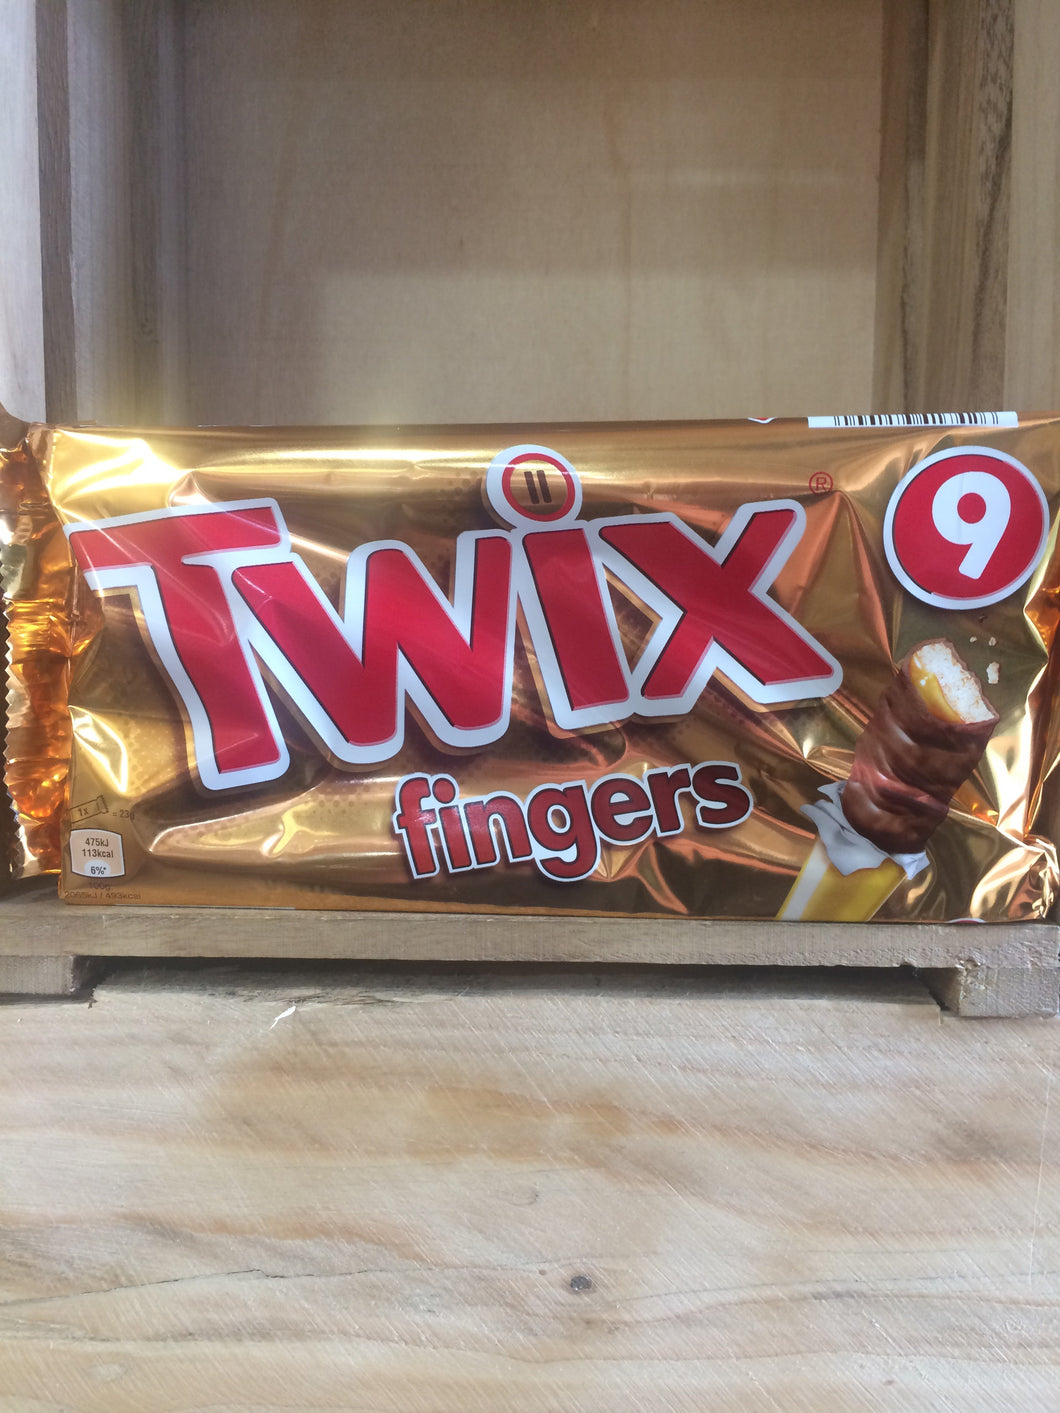 Twix Fingers 9 Pack 207g